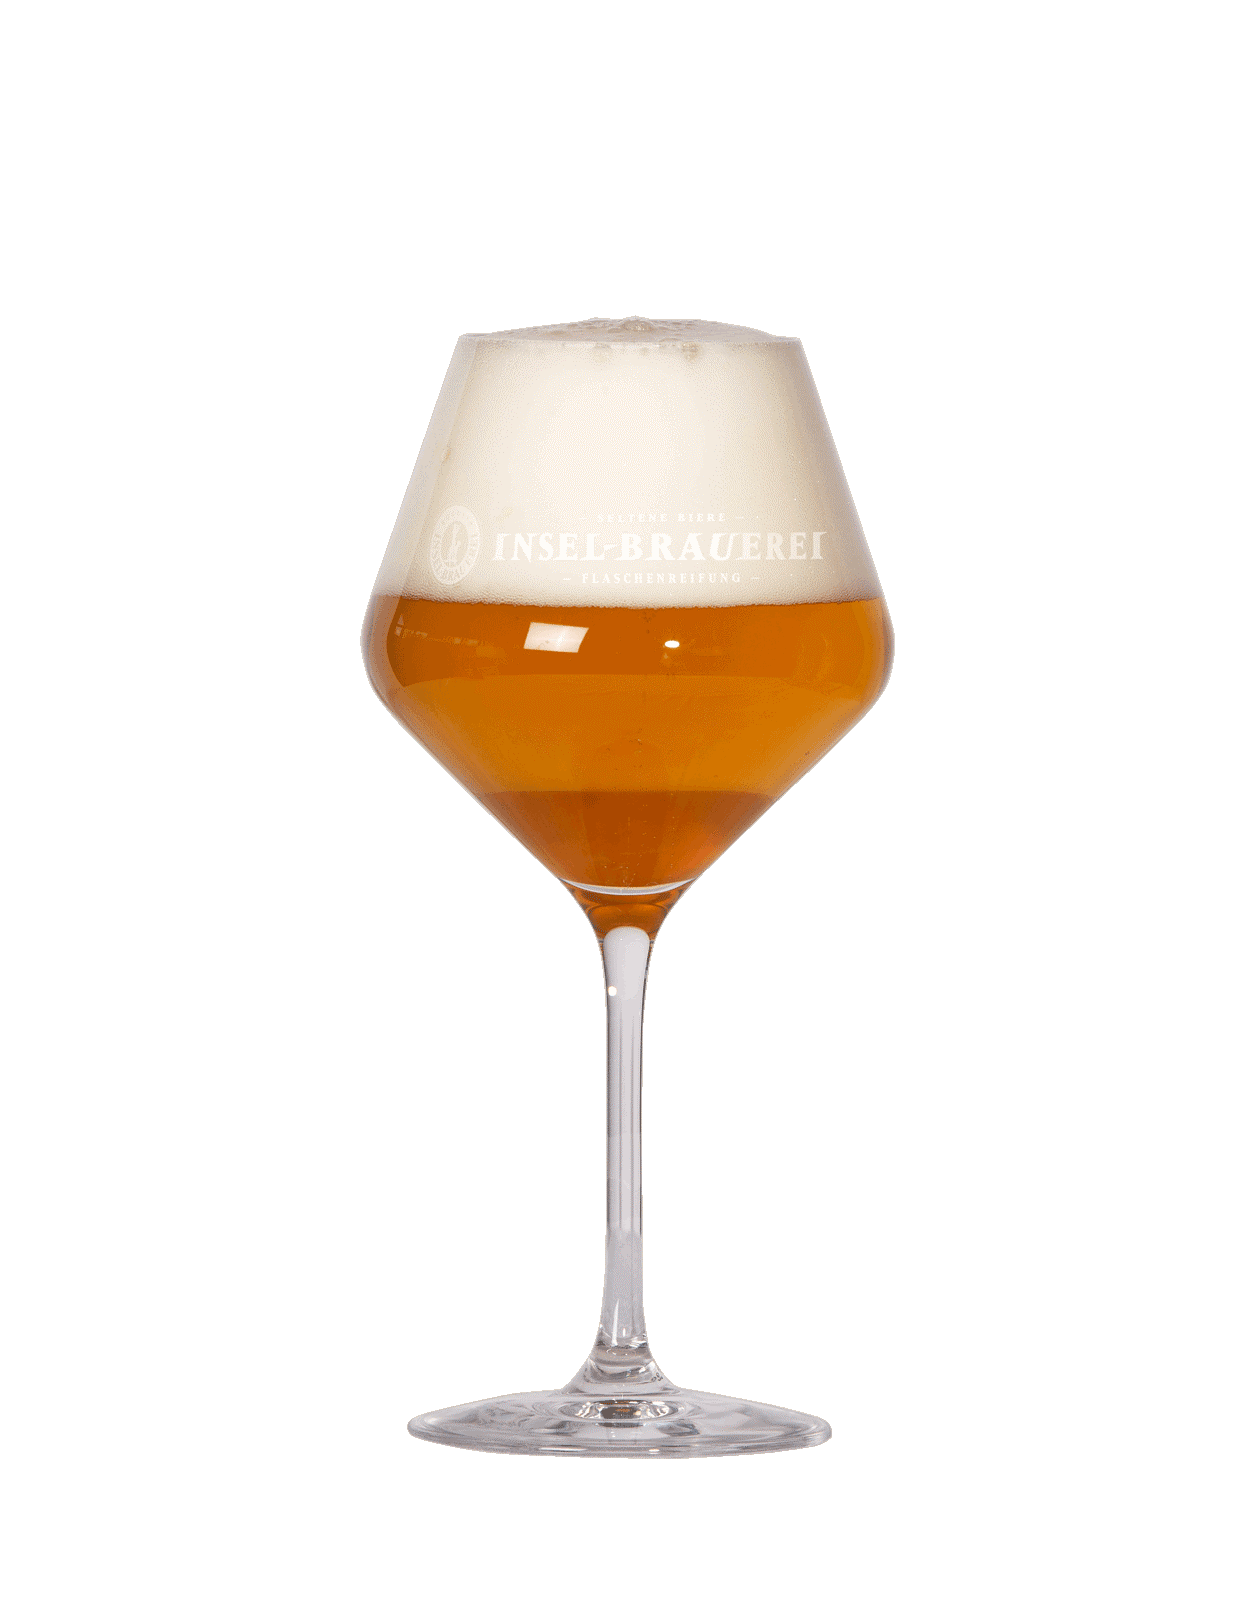 6 x Gourmetglas - Logo Insel-Brauerei